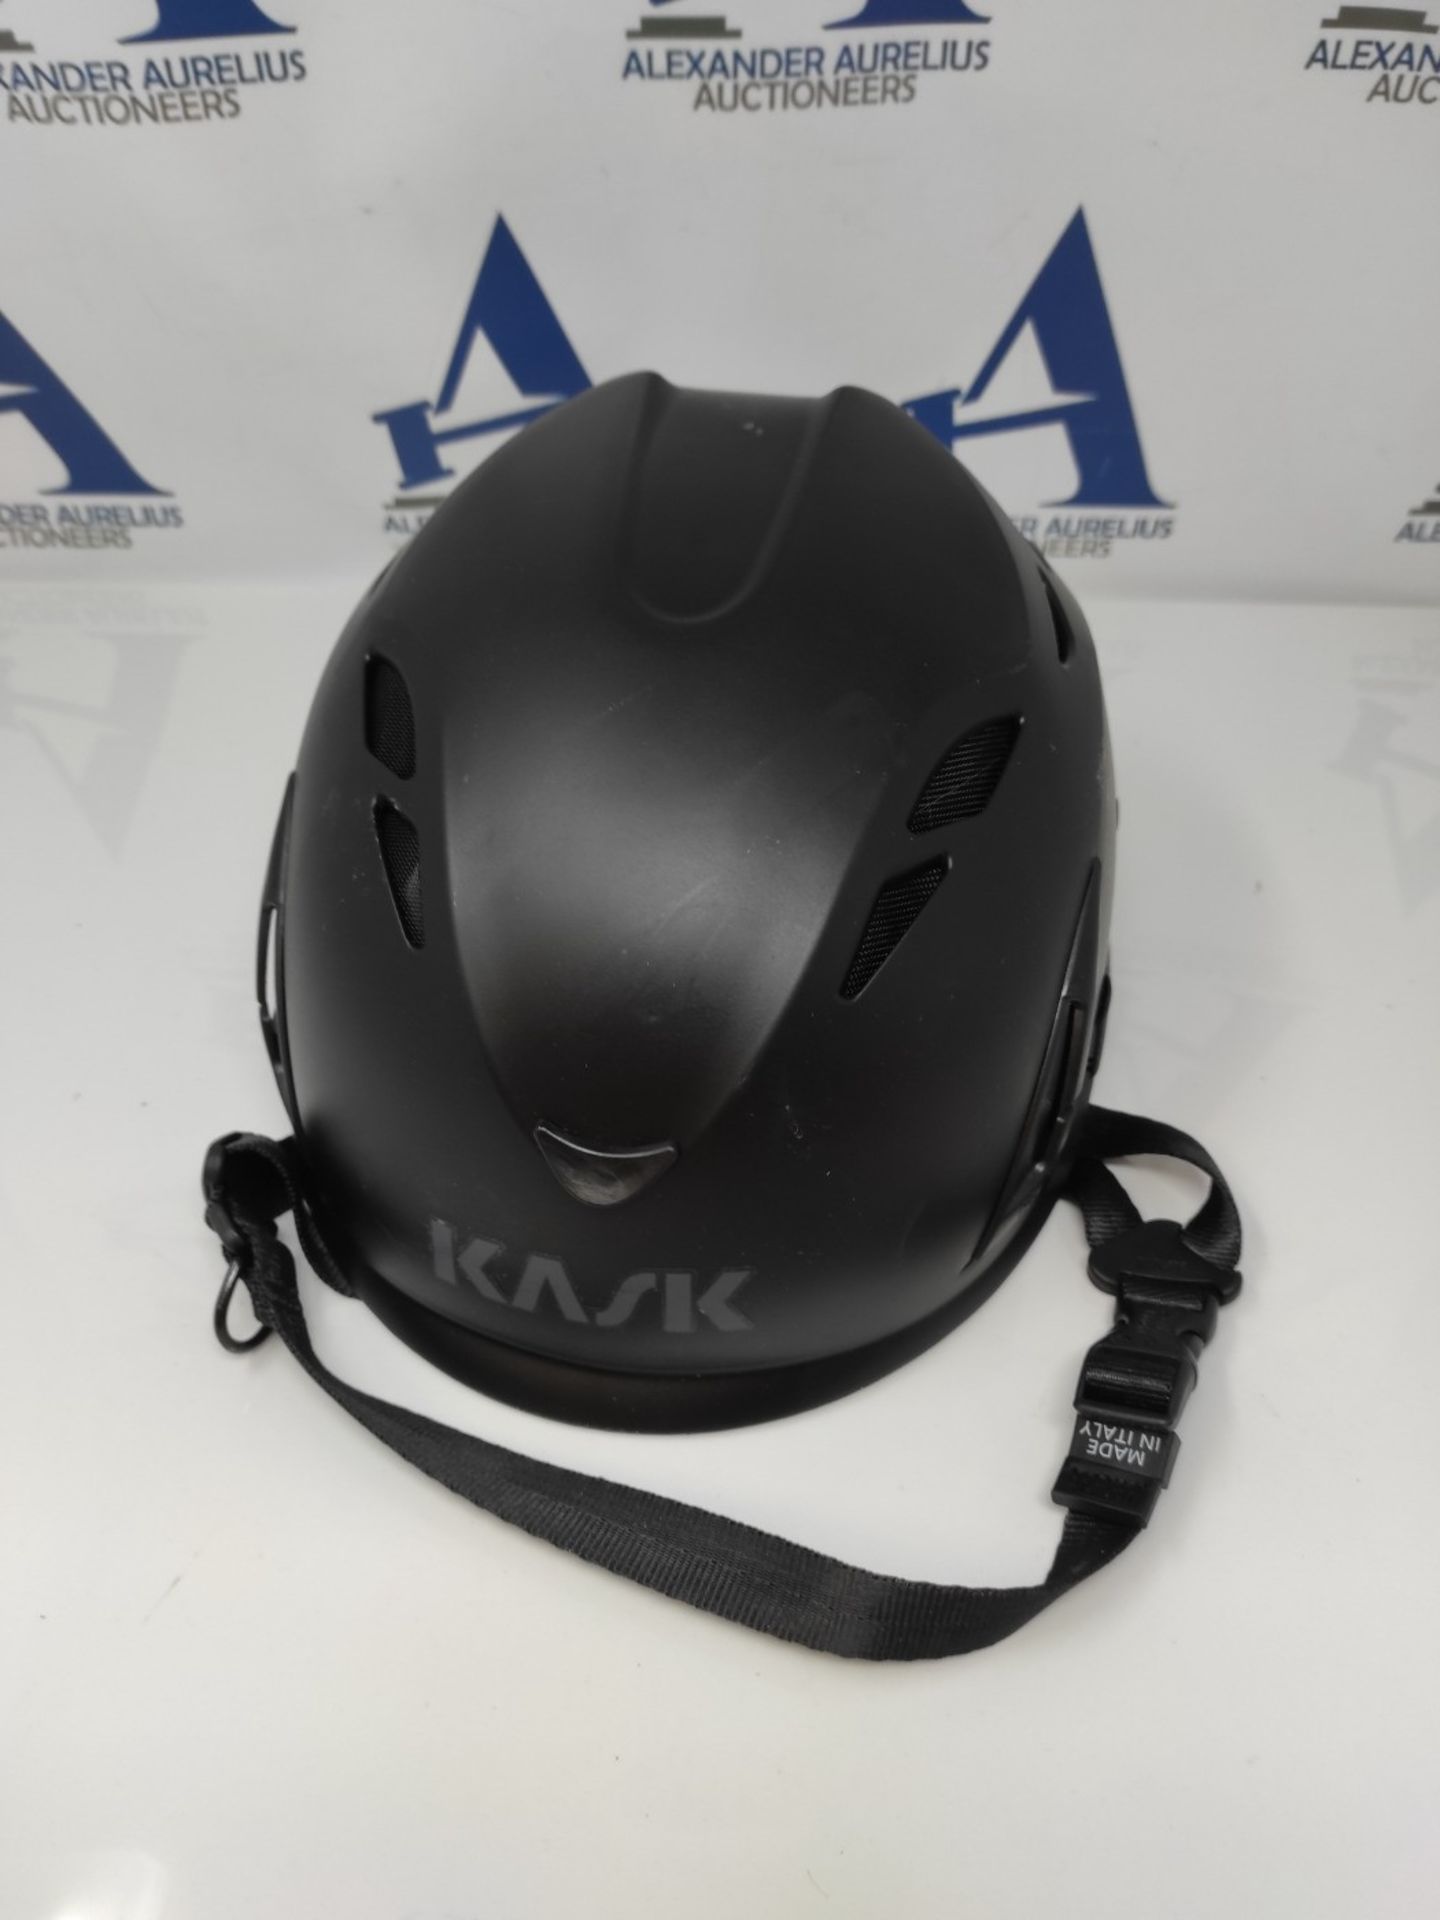 RRP £62.00 Kask AHE00005-210 Size 51-62 cm "Superplasma PL" Helmet - Black - Image 2 of 3